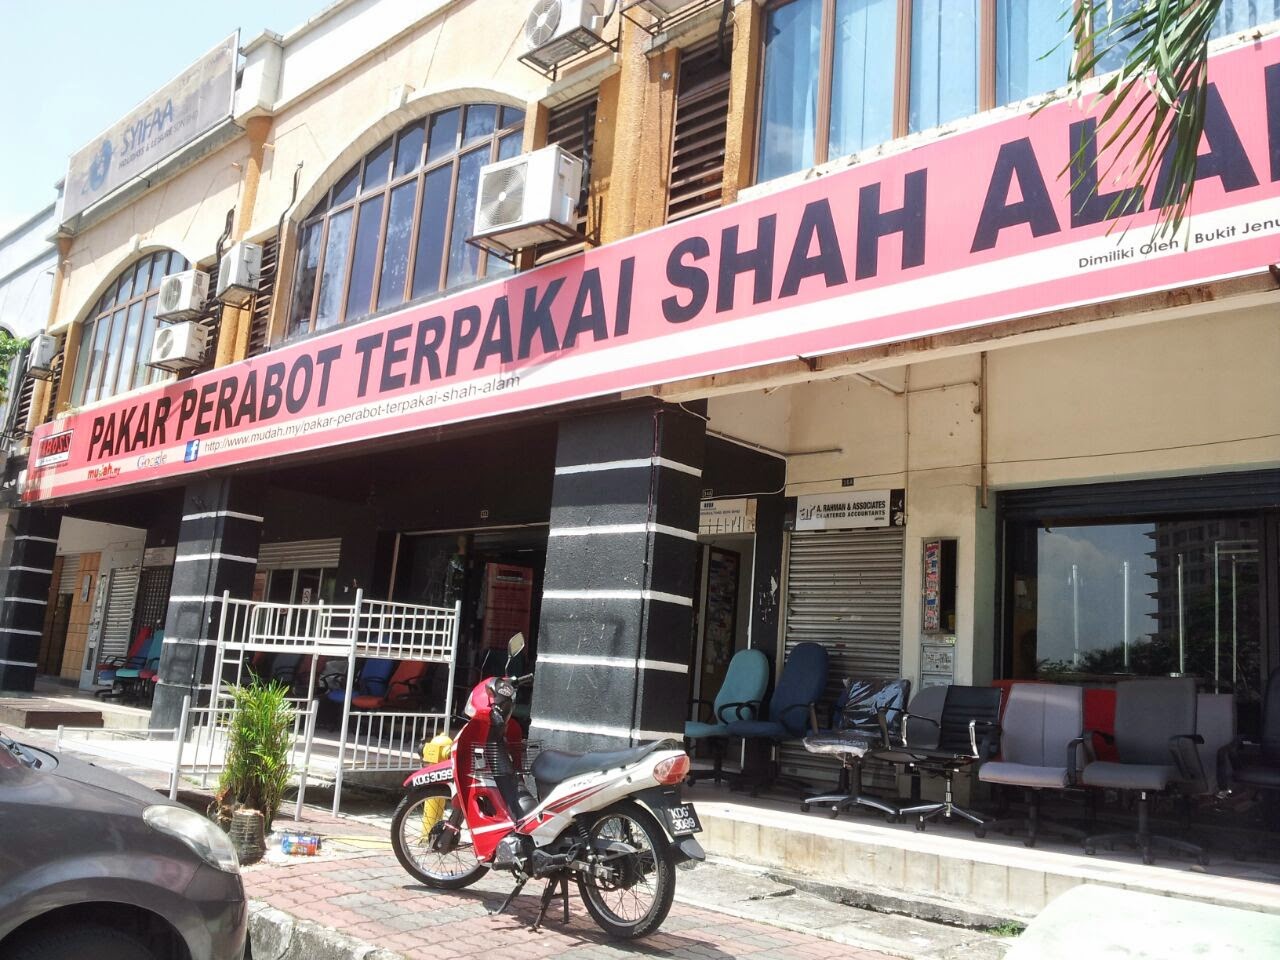 Kedai Sofa Murah Di Shah Alam www cintronbeveragegroup com